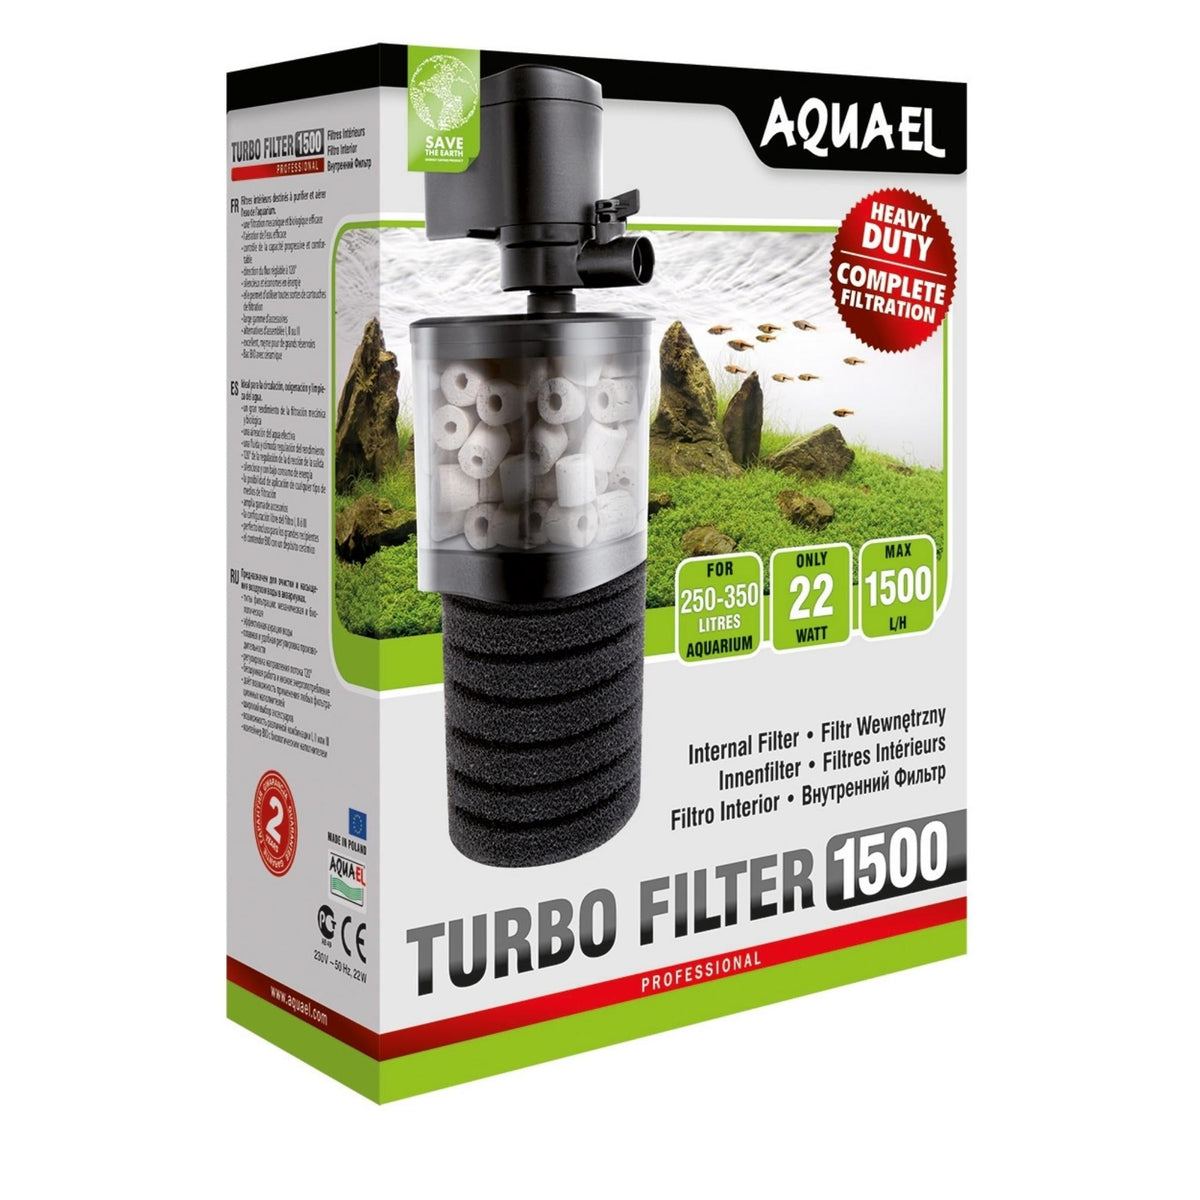 AQUAEL Turbo-Filter 1500 - Nano Tanks Australia Aquarium Shop